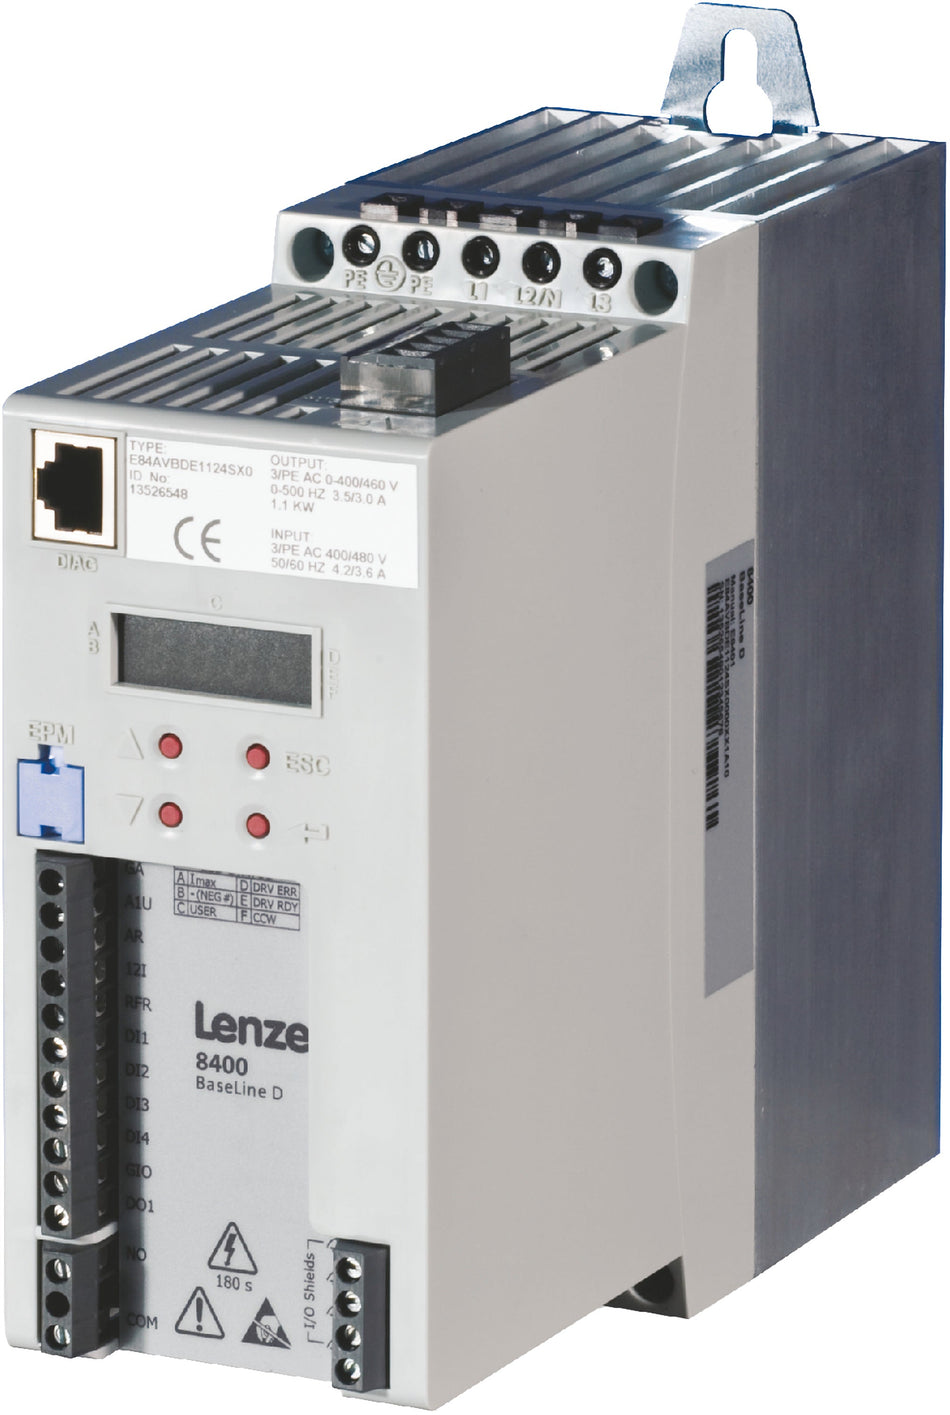 Lenze Inverter Drives 8400 BaseLine -  E84AVBDE1524SX0 1.5 kW Inverter